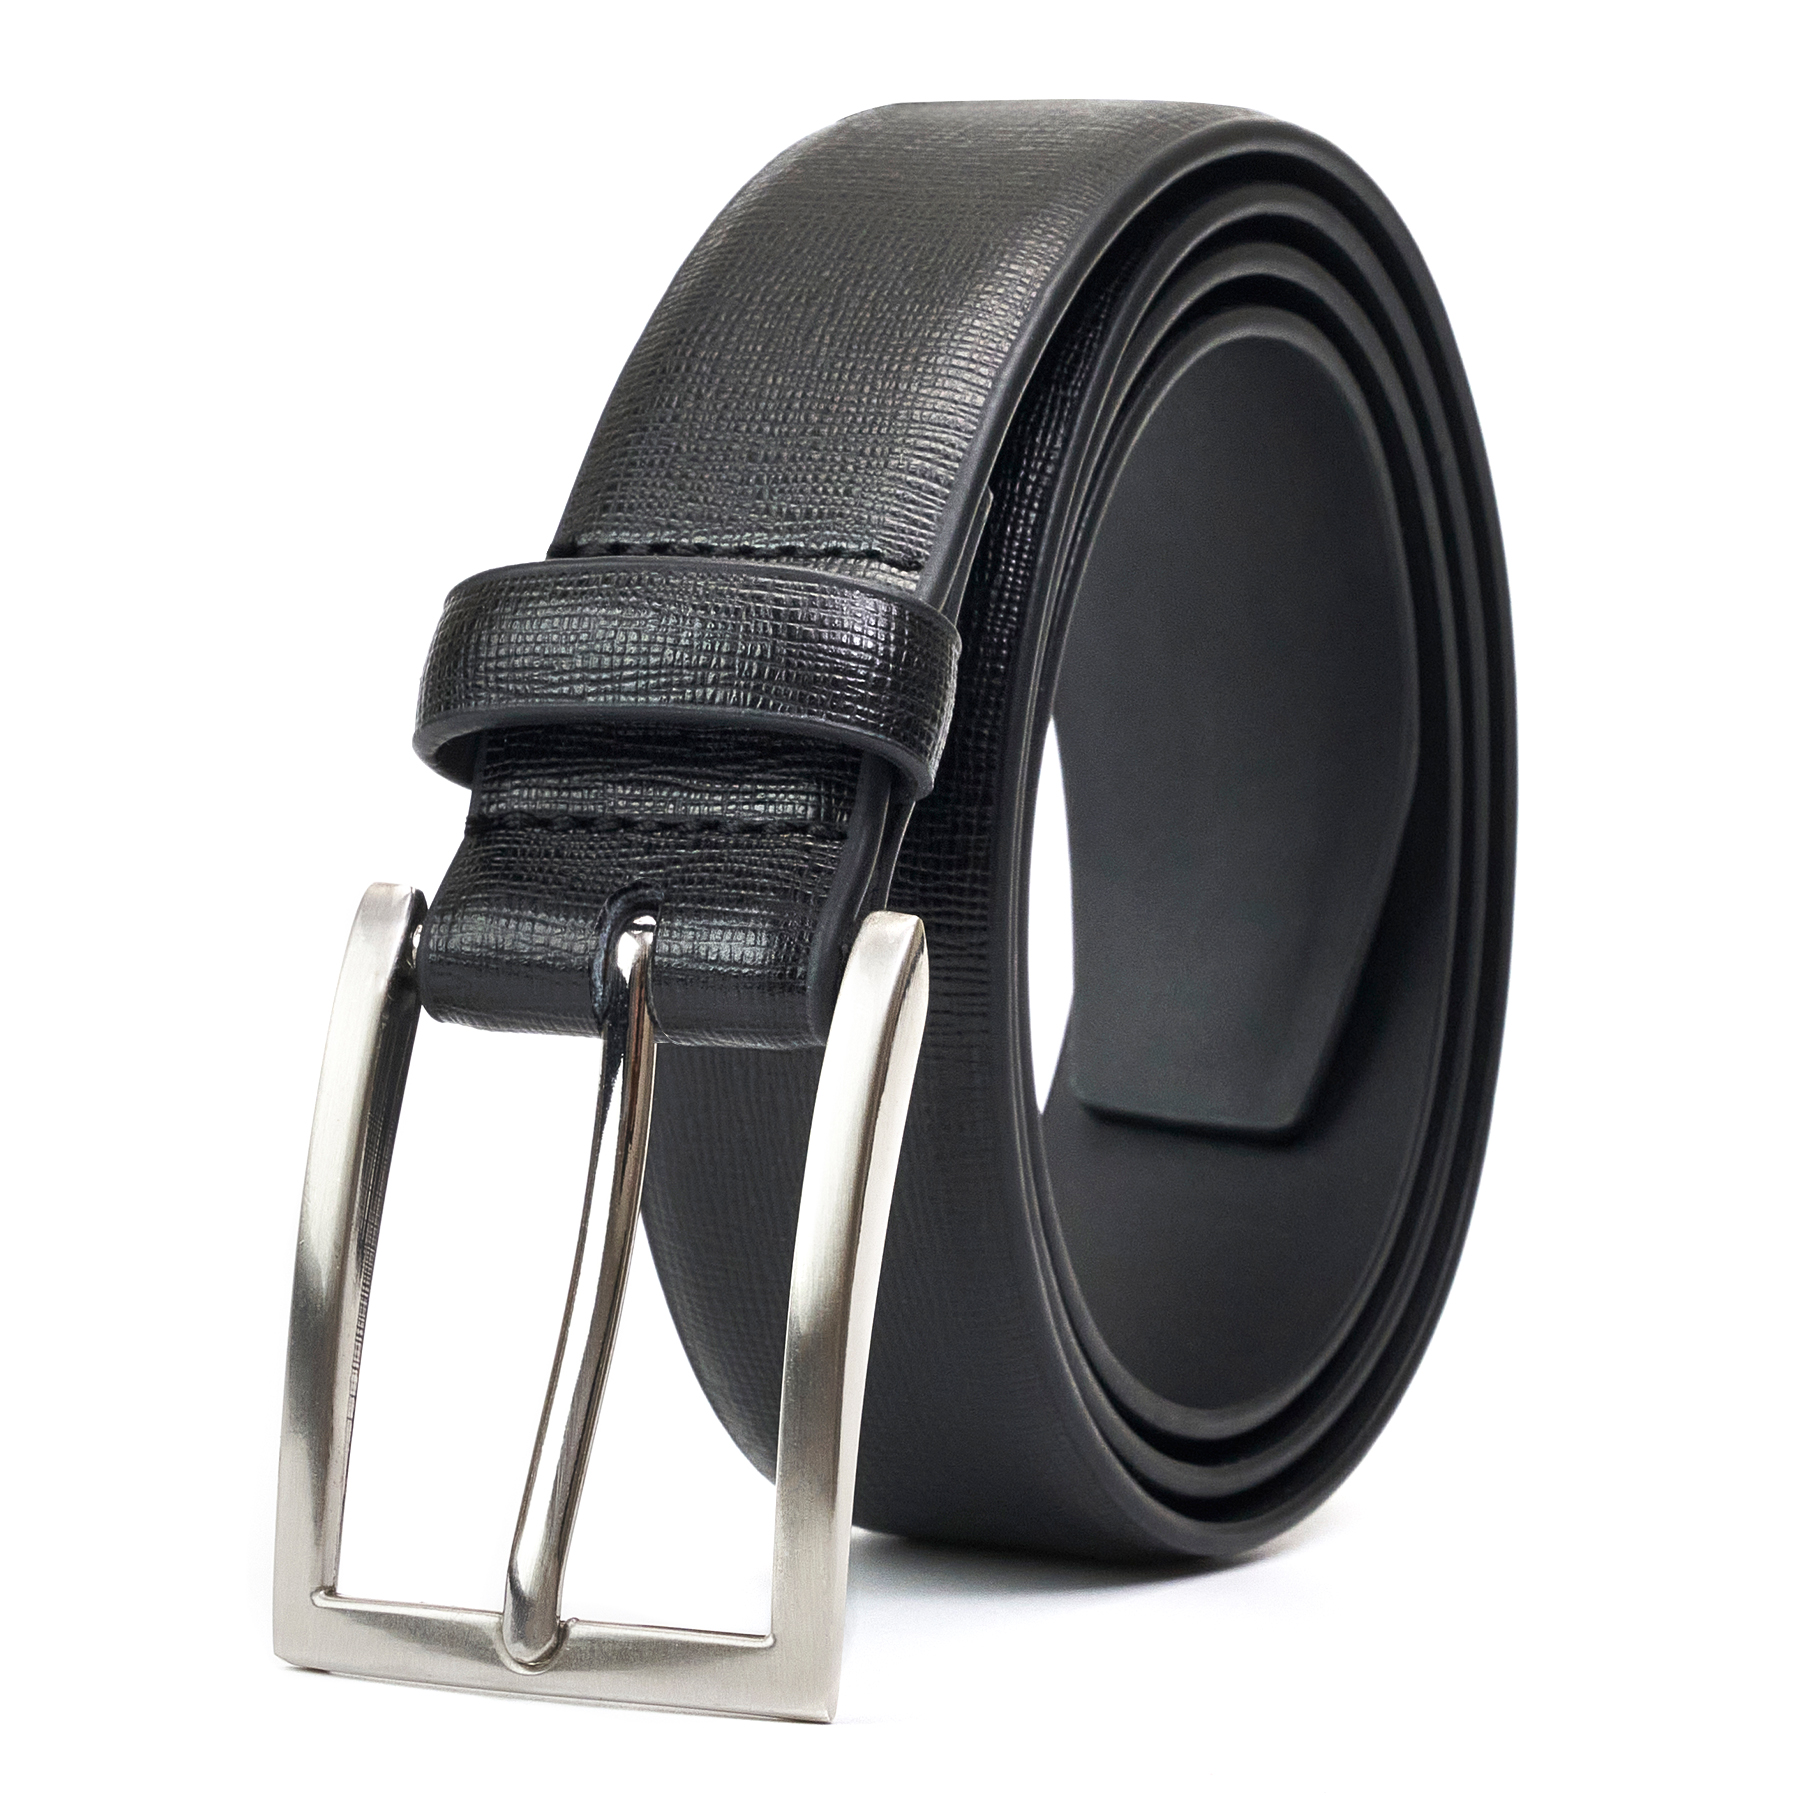  Cinturones de vestir de cuero genuino para hombres – Cinturón  para hombre para trajes, jeans, uniforme con hebilla de un solo diente –